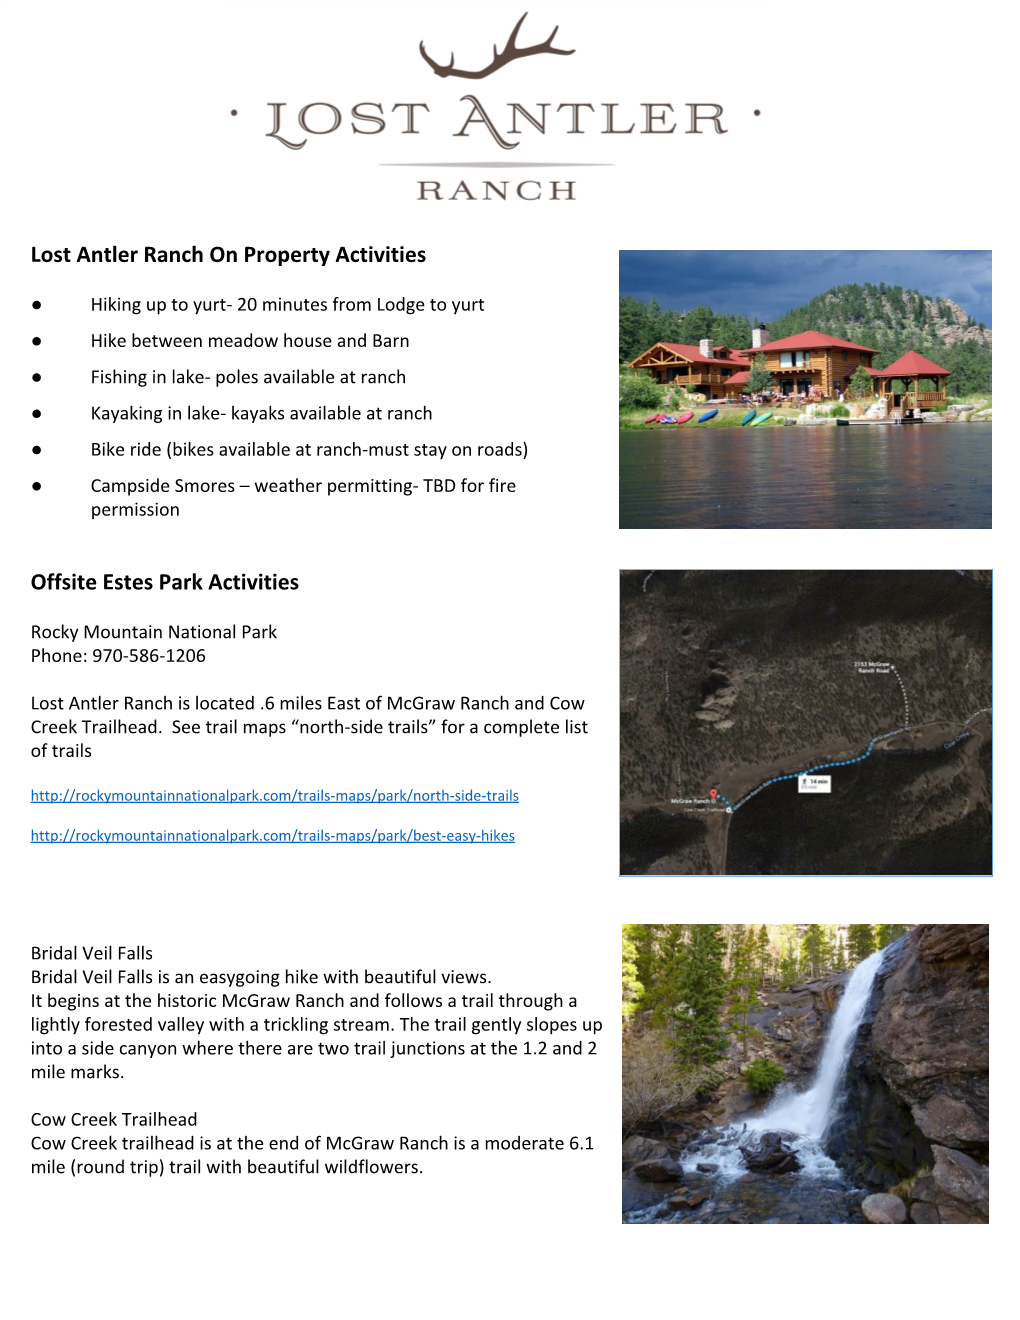 Lost Antler Ranch on Property Activities Offsite Estes Park Activities